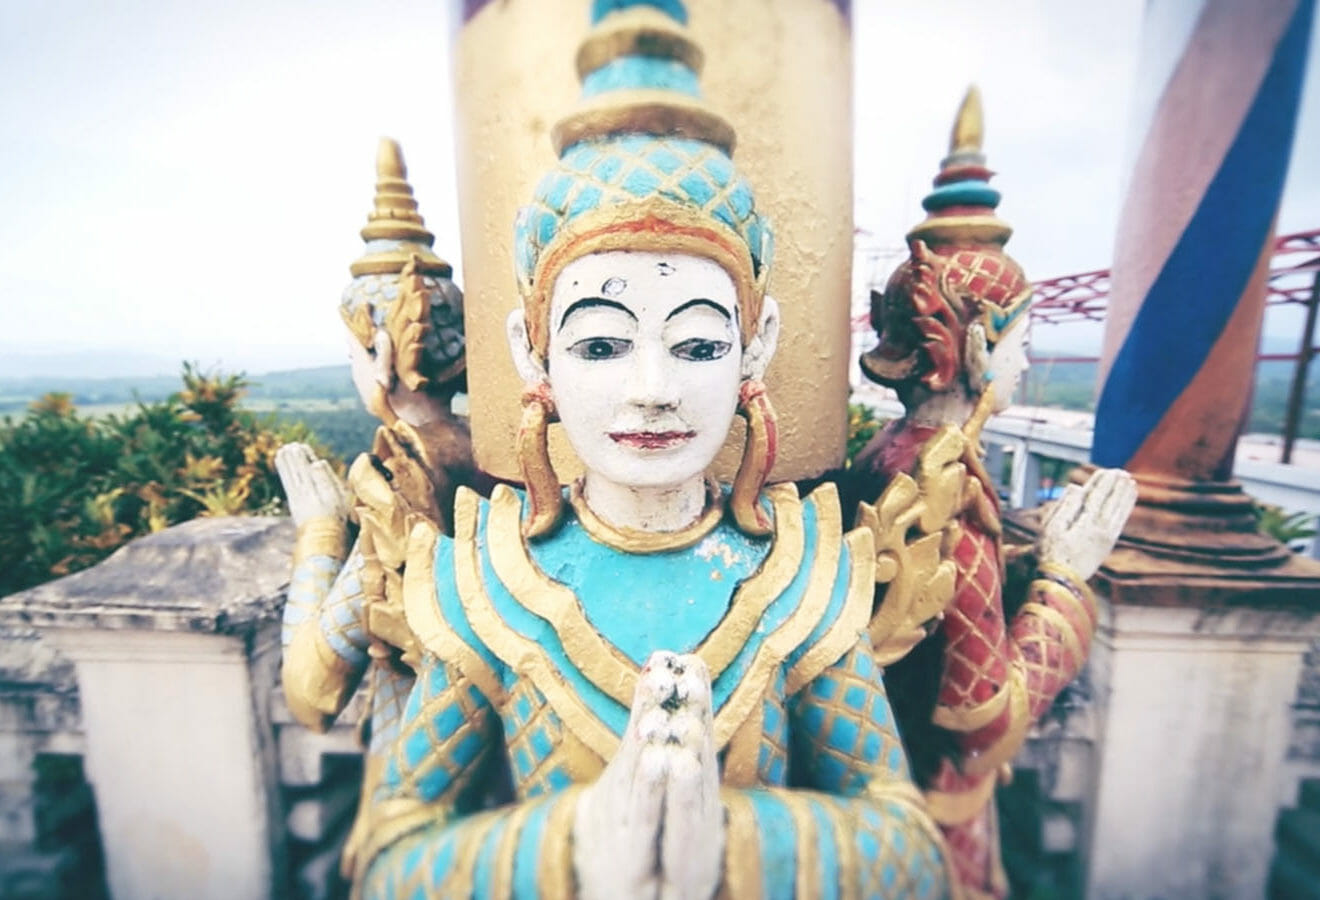 VIDEO - In Myanmar